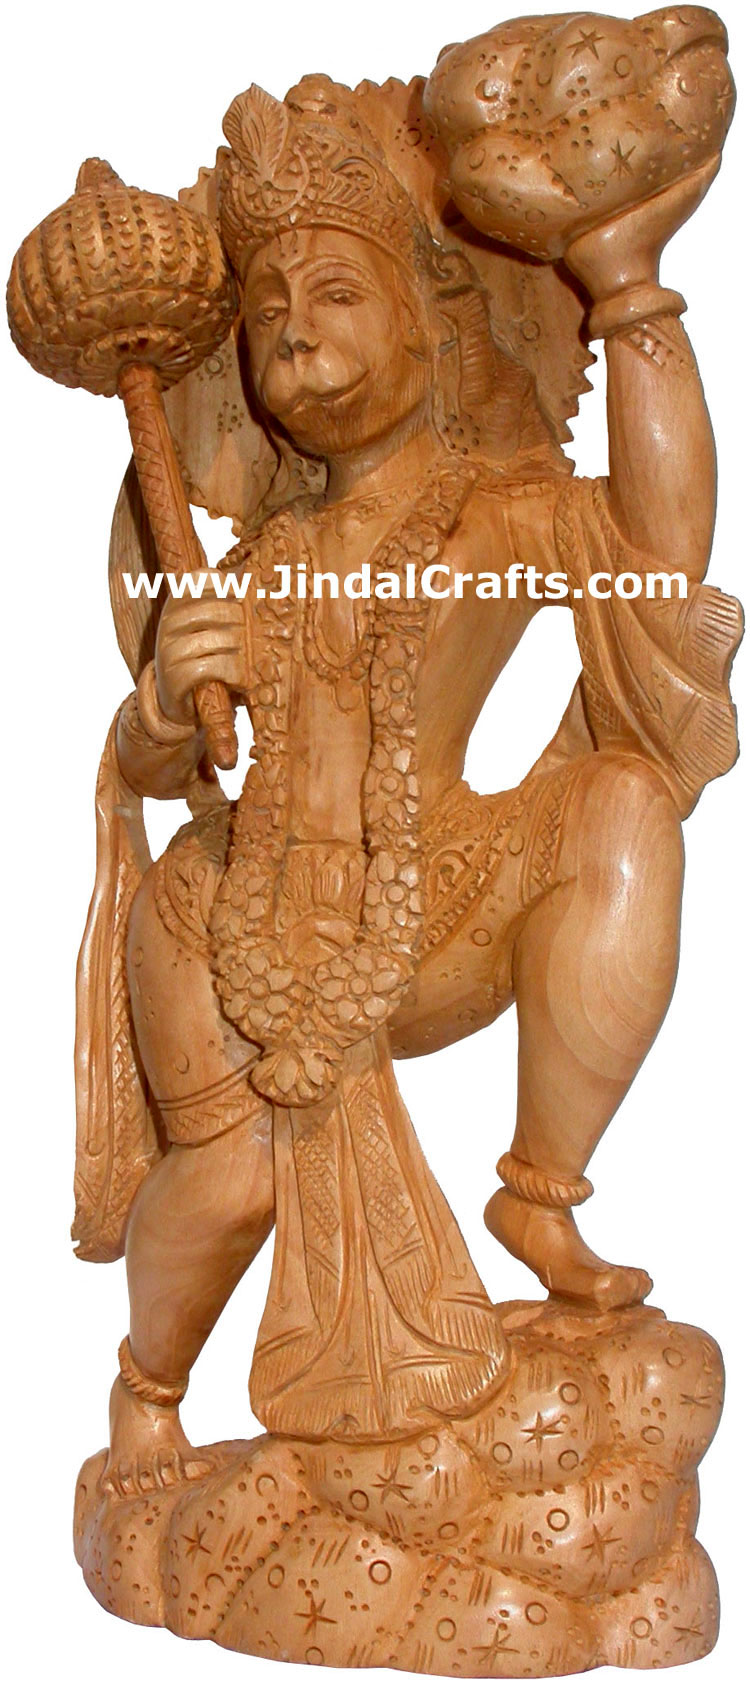 Hand Carved Wooden Hanumaan Figure Indian Art